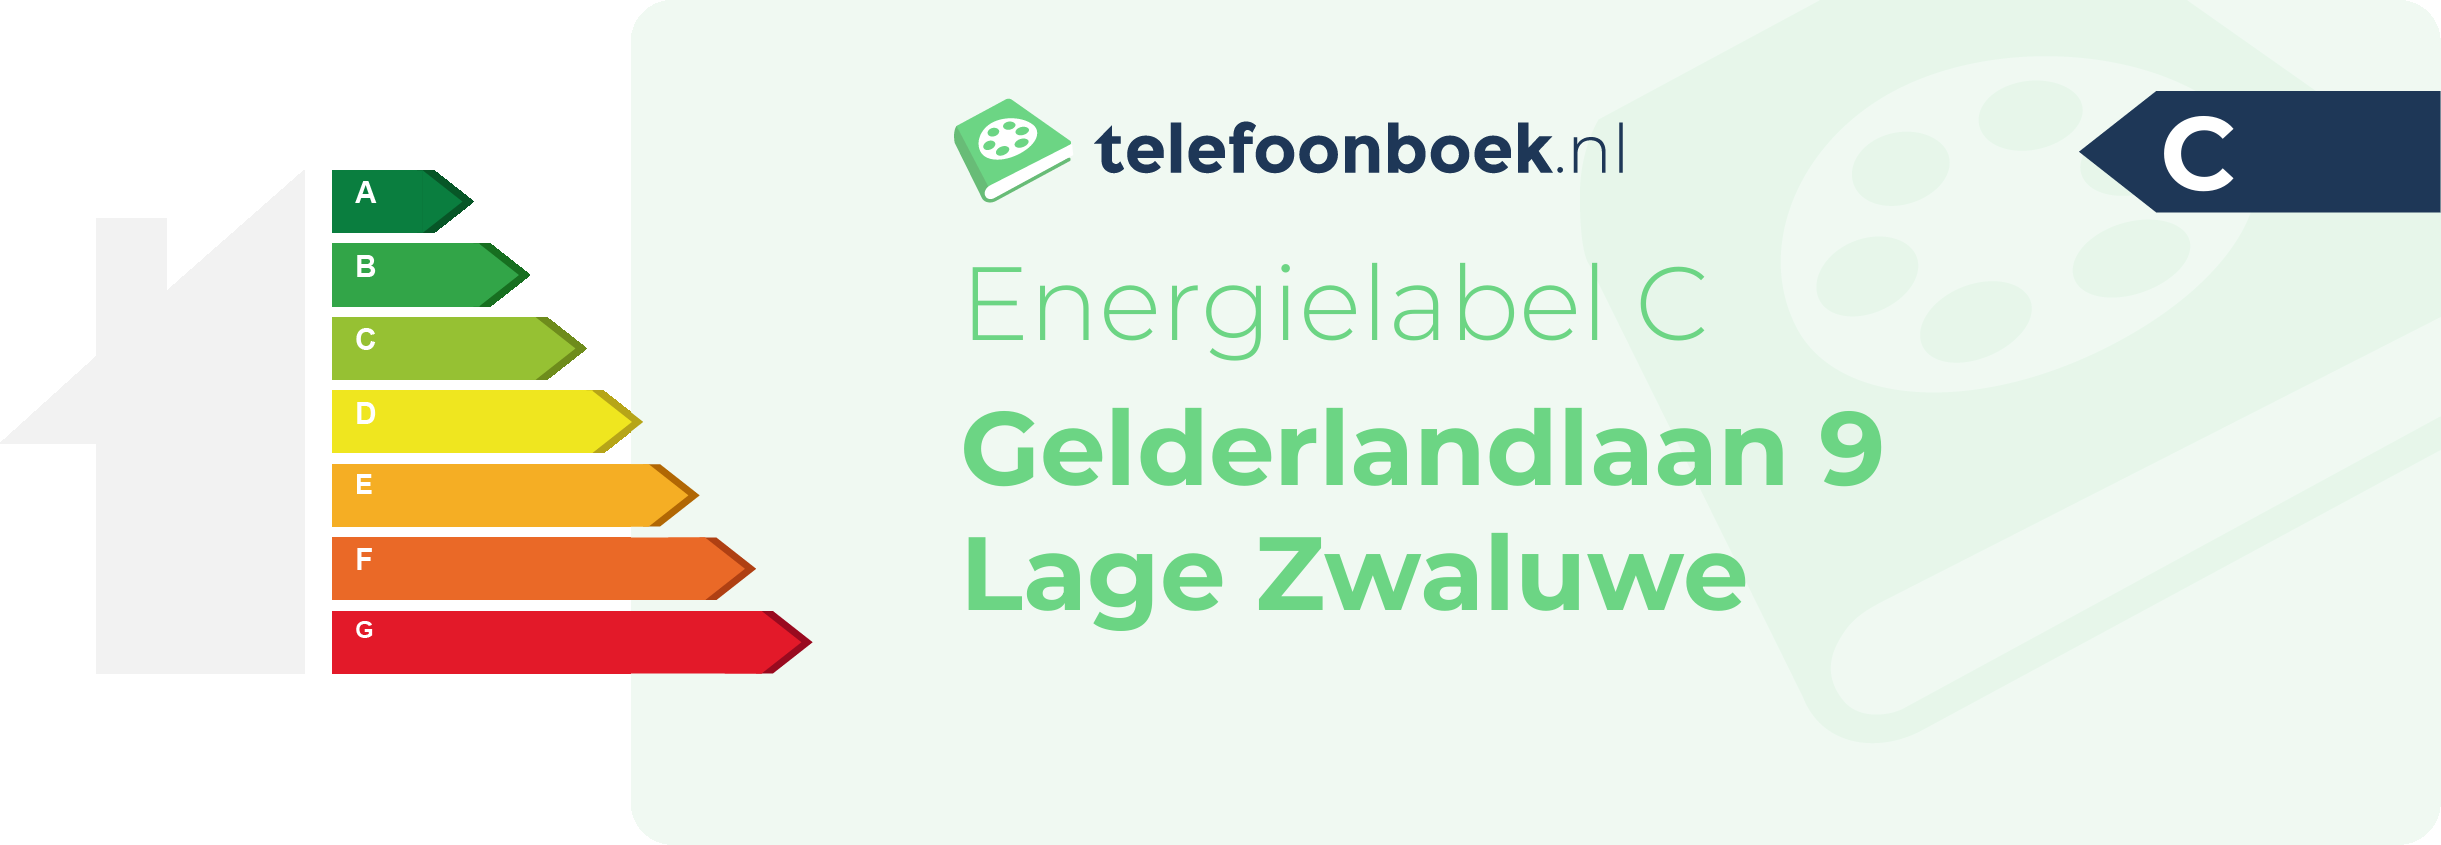 Energielabel Gelderlandlaan 9 Lage Zwaluwe